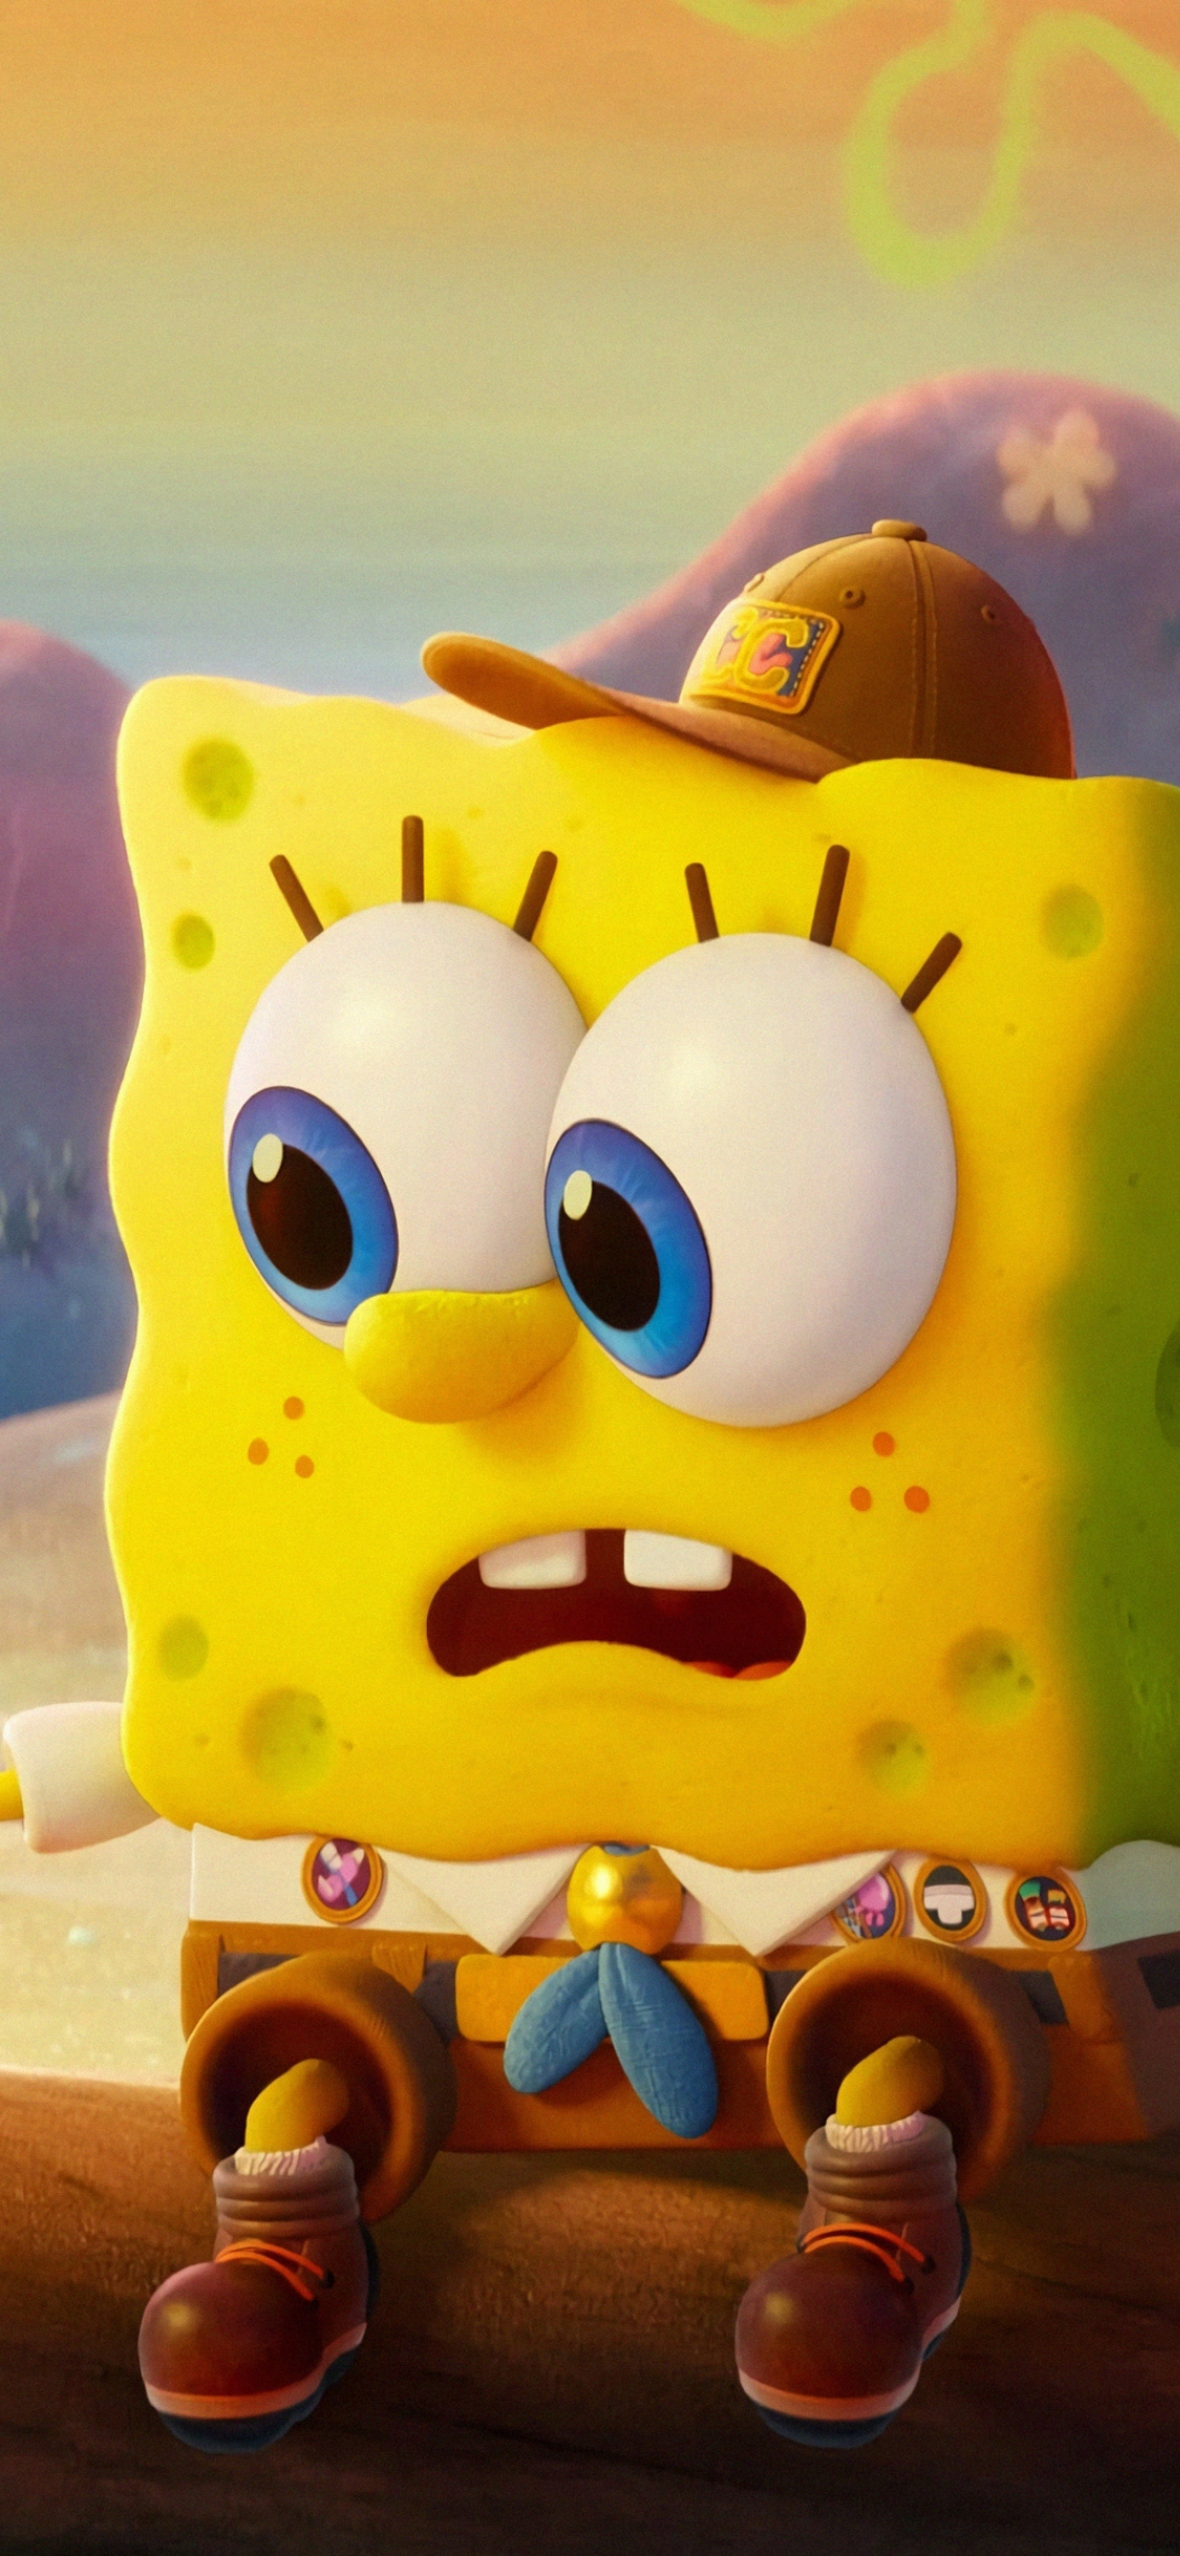 Spongebob Squarepants iphone Wallpaper HD